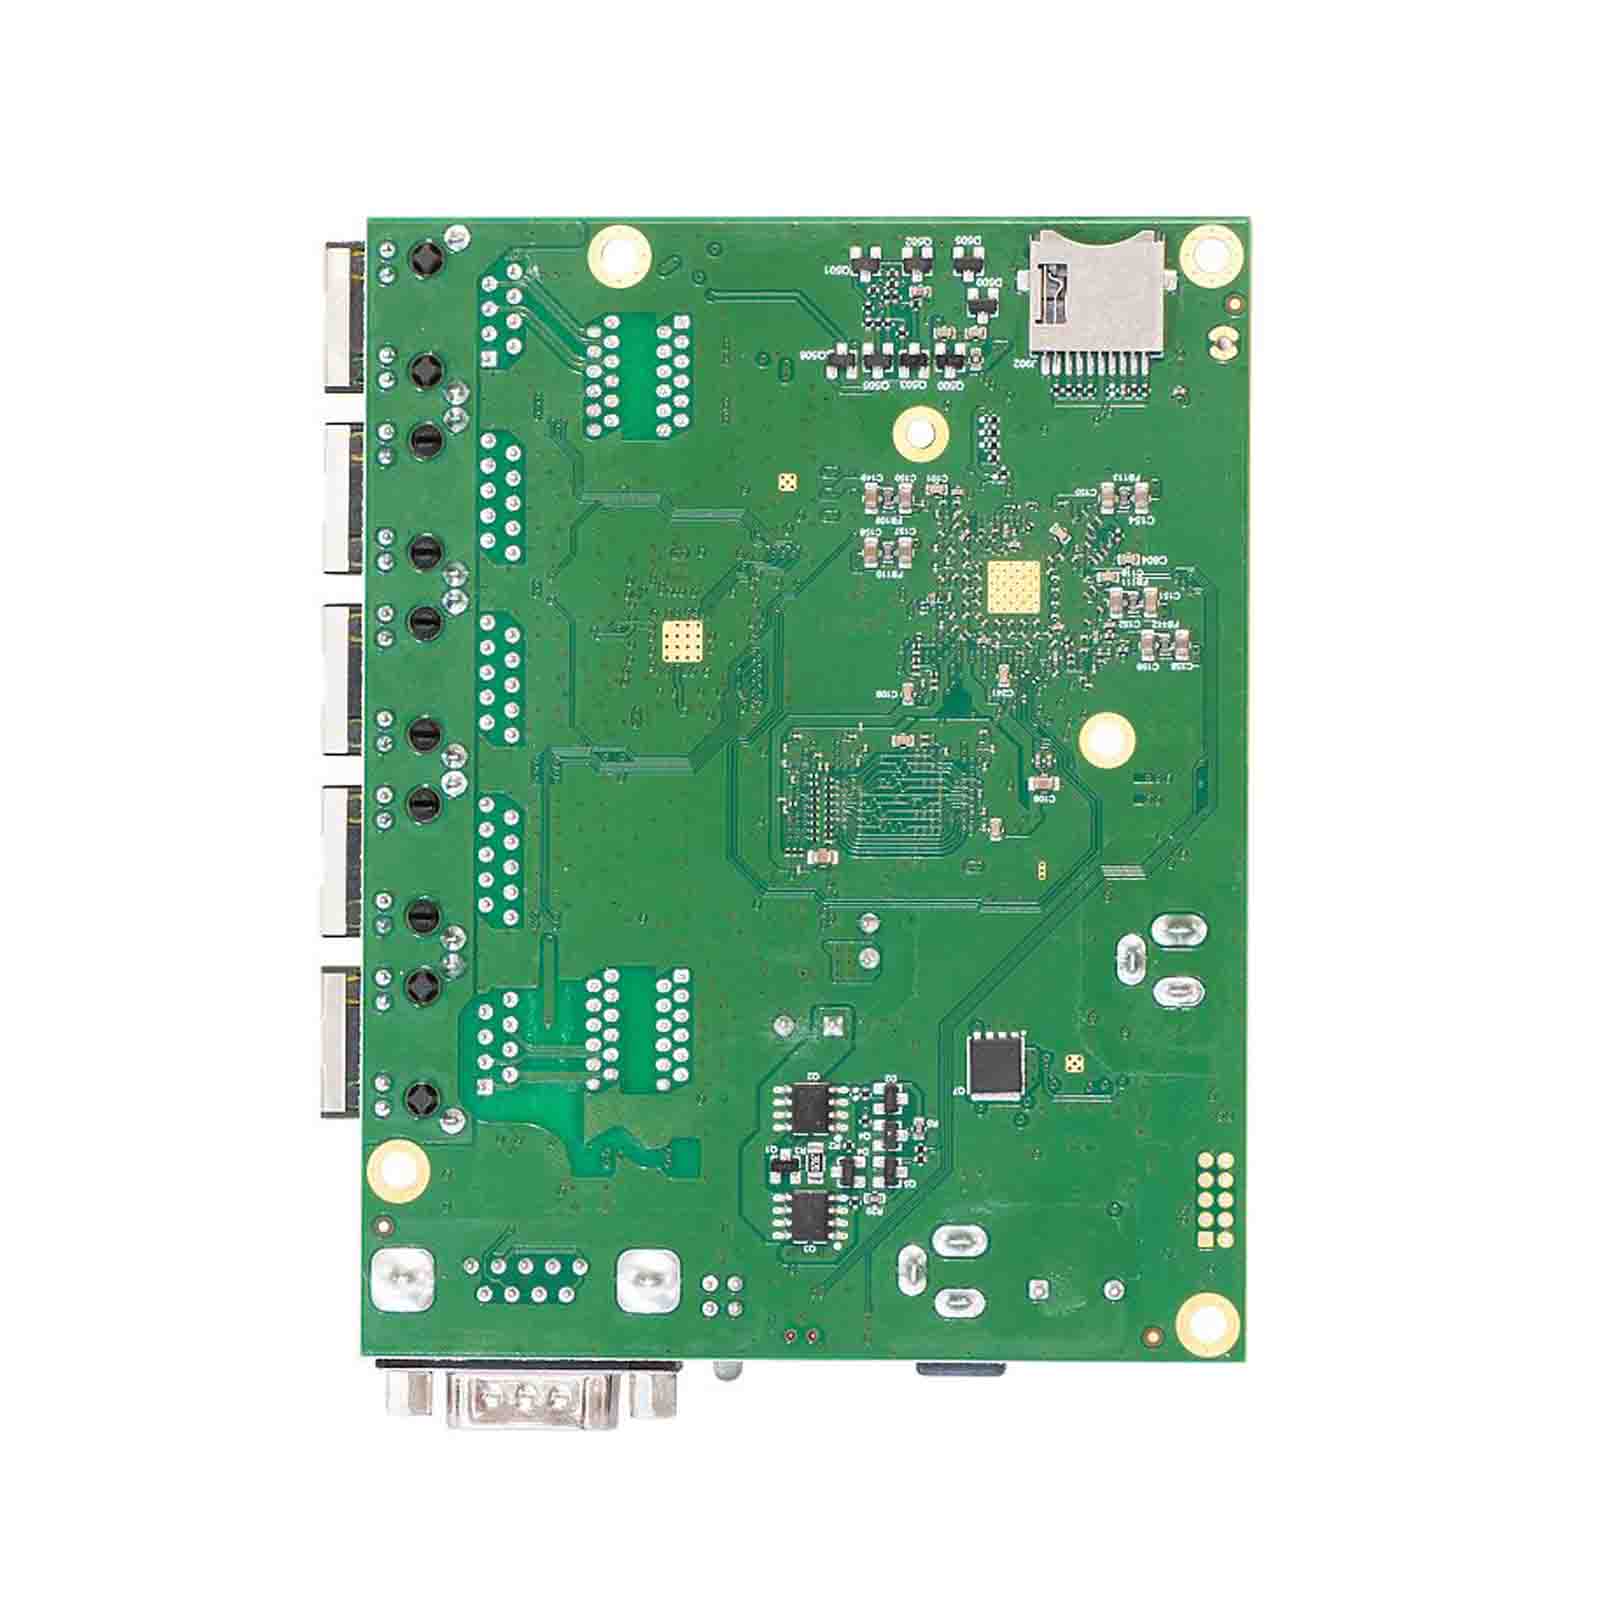 MikroTik RouterBoard RB450Gx4 (RB450Gx4)